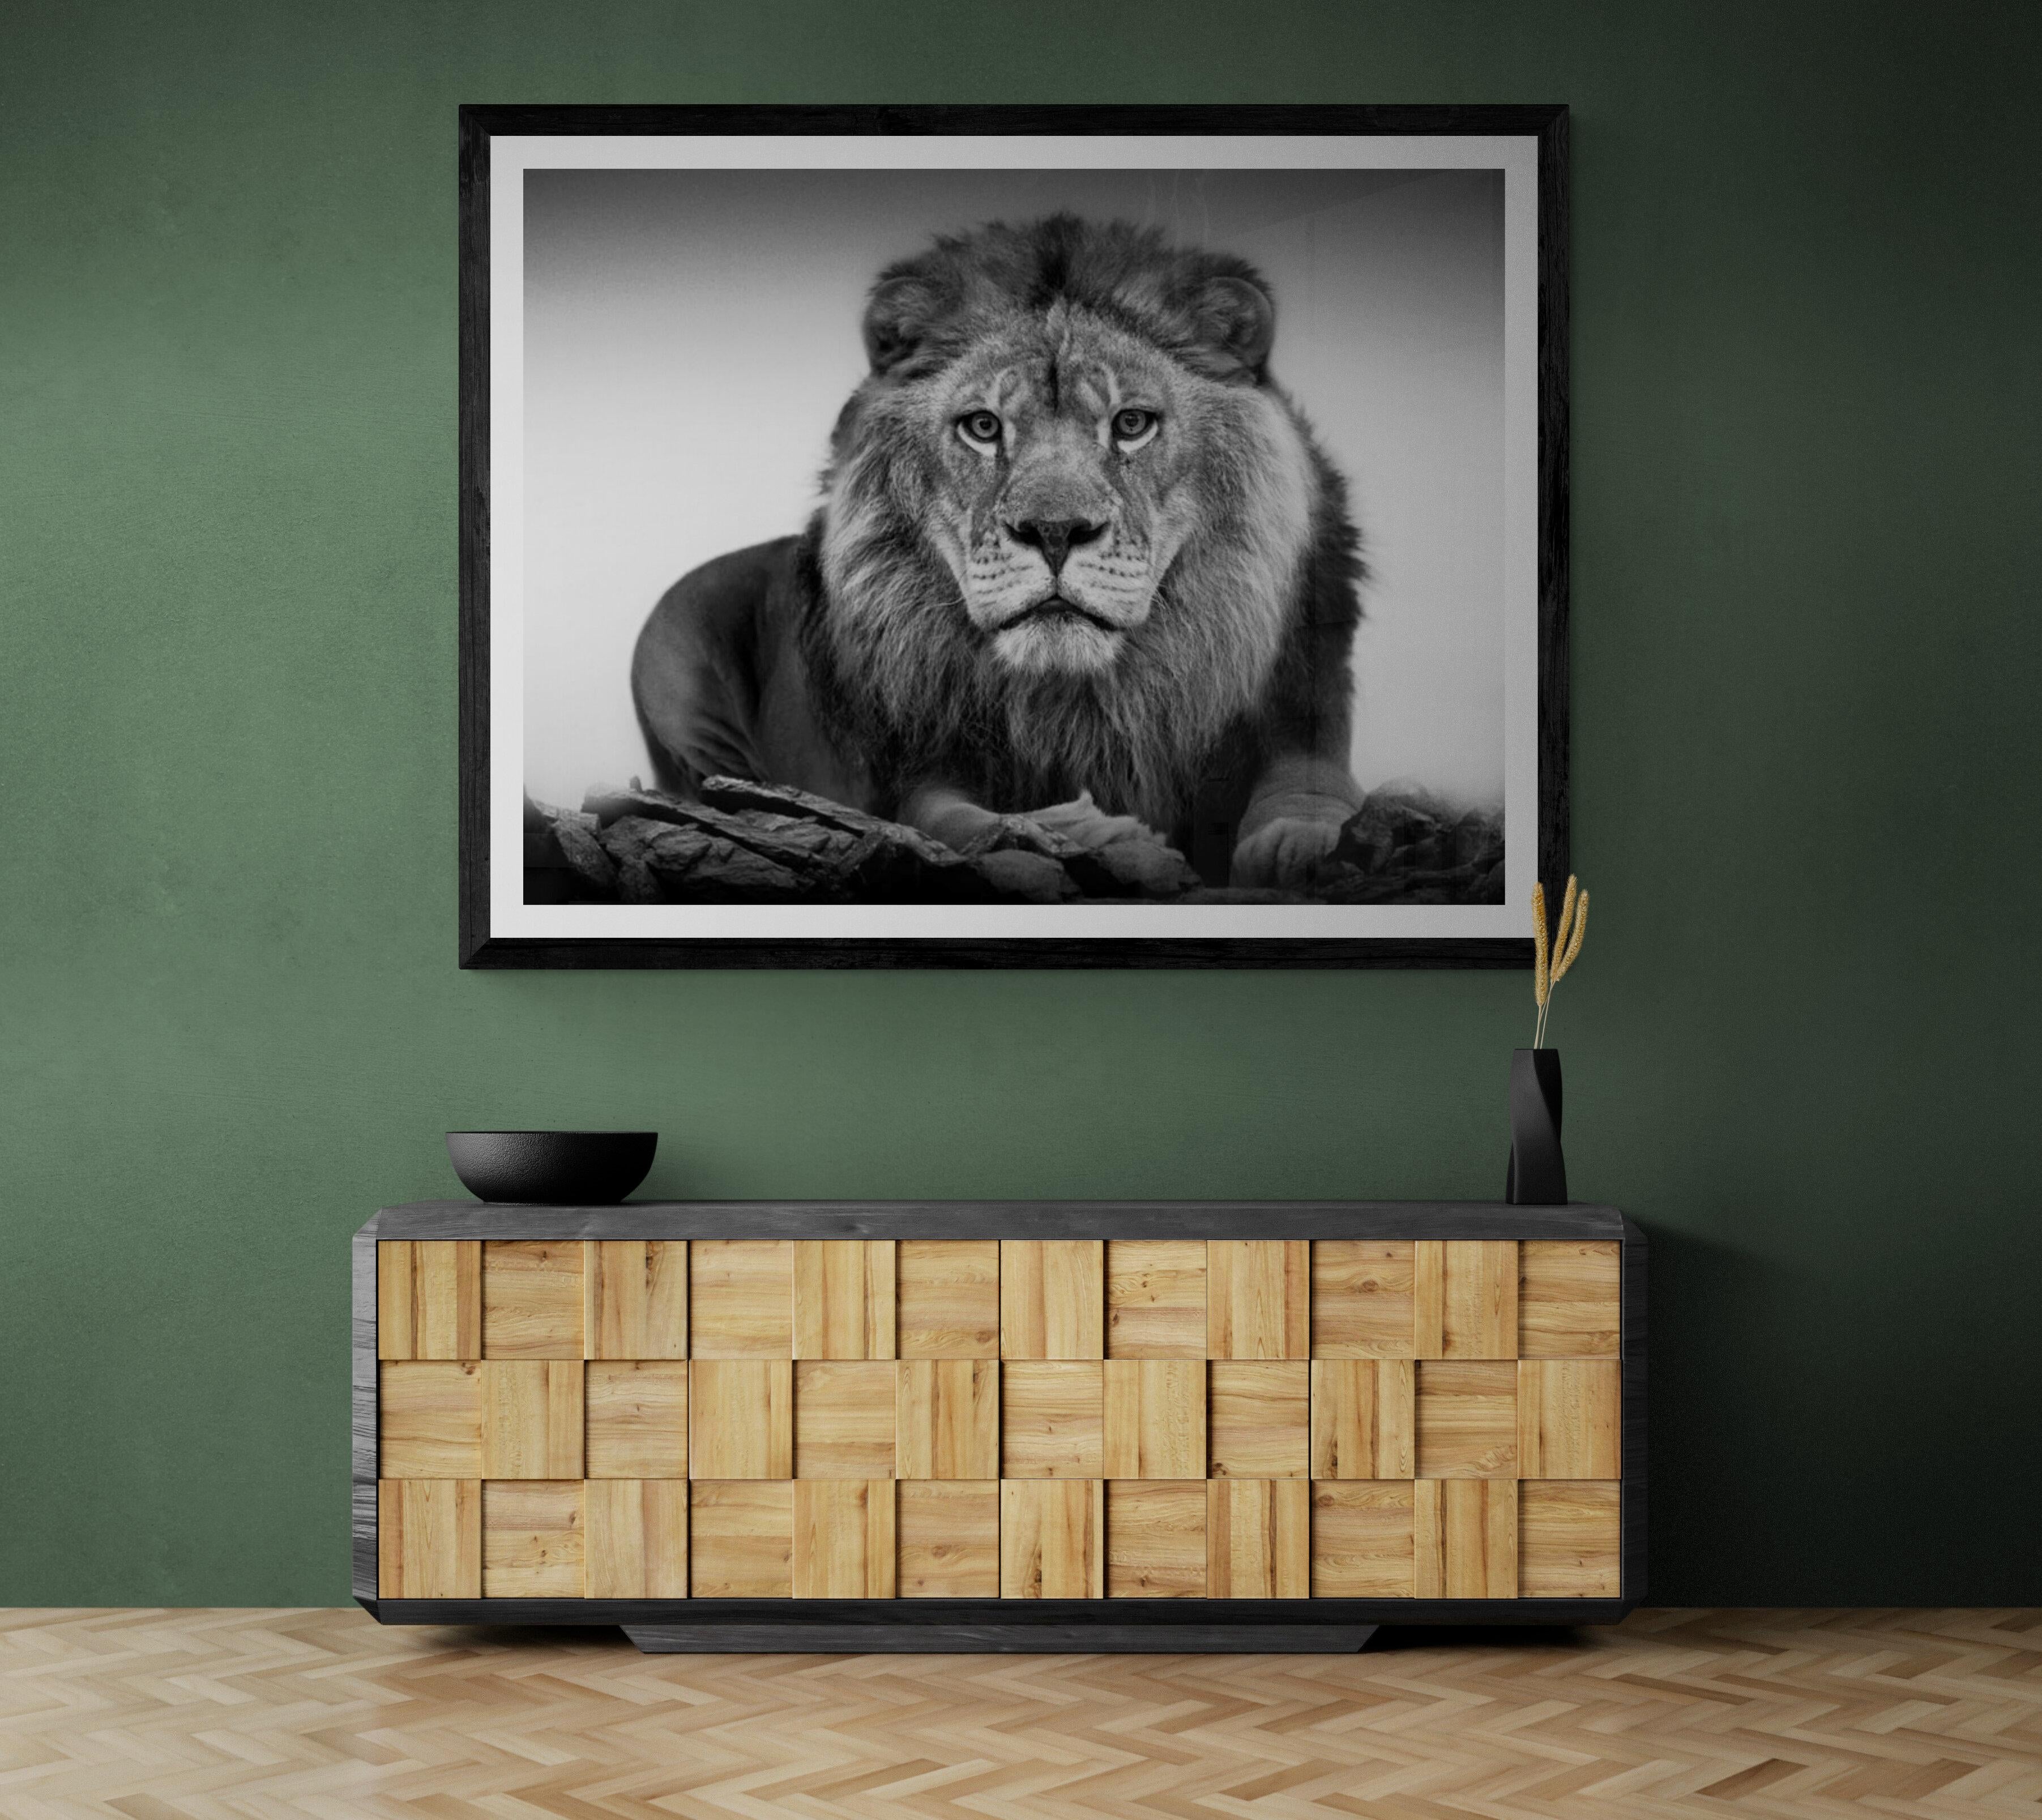 Il s'agit d'une photographie contemporaine d'un lion africain. 
28x40
Chanté et numéroté
Impression au pigment d'archivage.
Encadrement disponible. Renseignez-vous sur les tarifs. 

LIVRAISON GRATUITE

Shane Russeck s'est forgé une réputation en